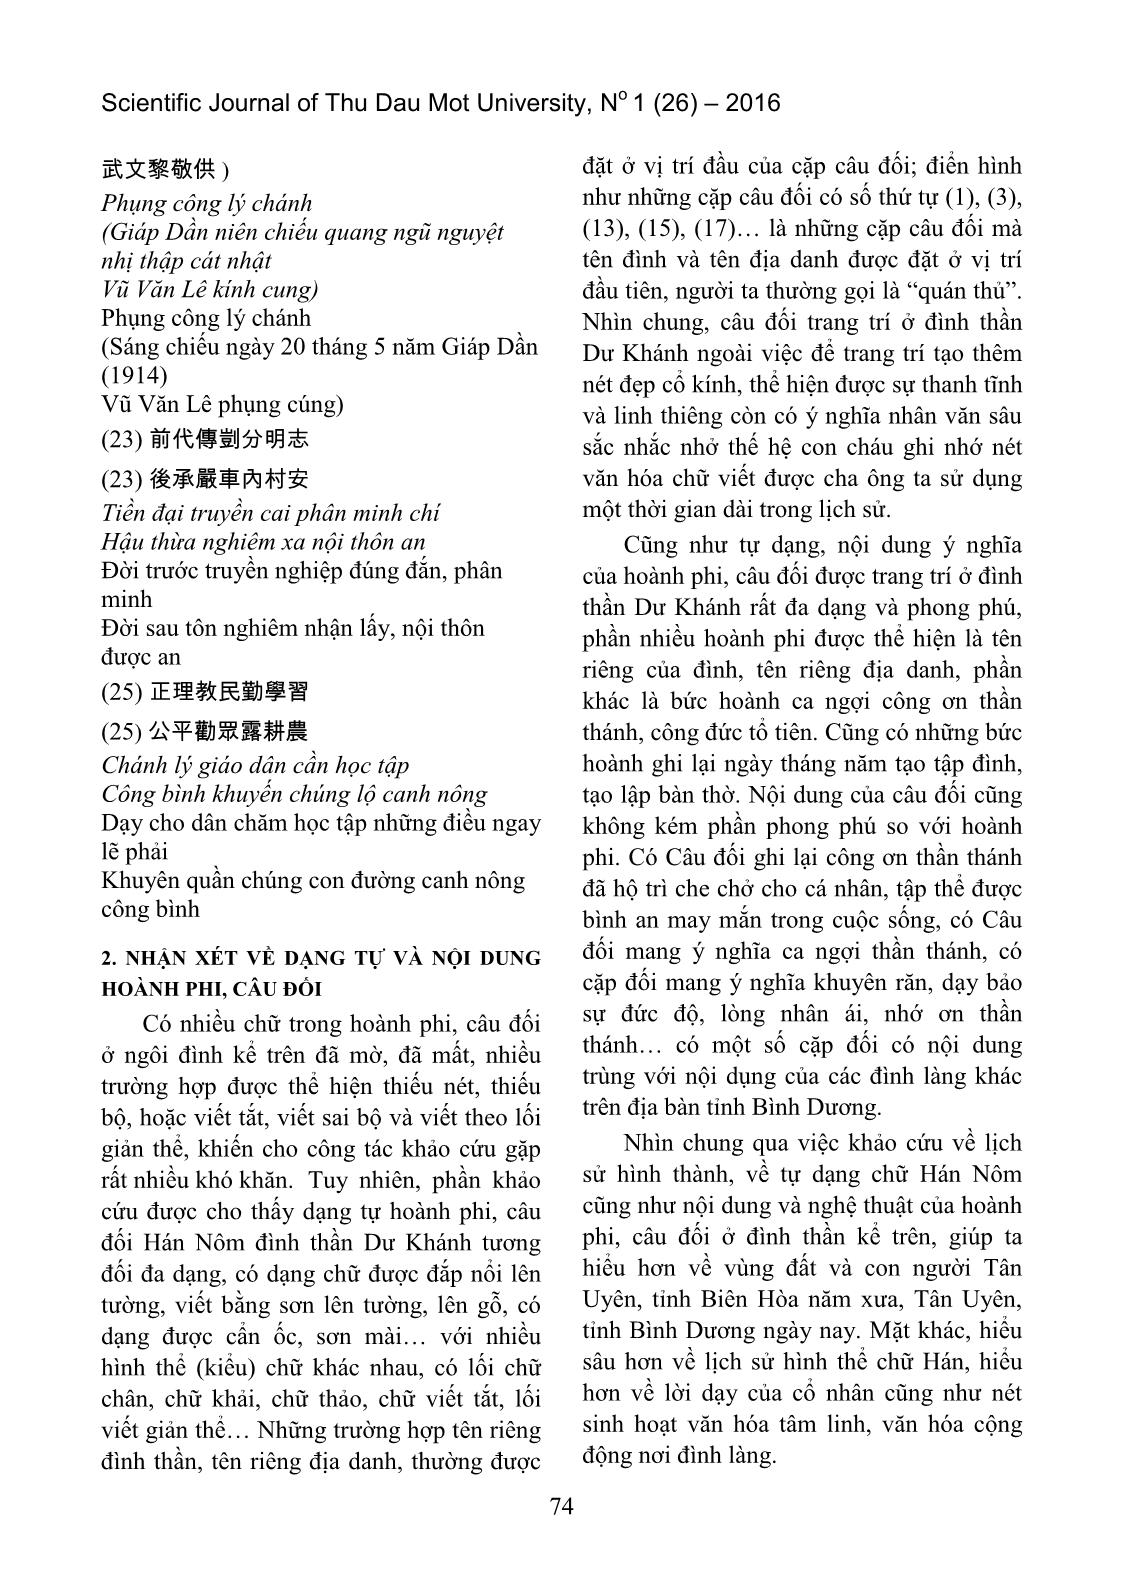 Tìm hiểu hoành phi, câu đối Hán Nôm đình thần dư khánh (Tân Uyên, Bình Dương) trang 5